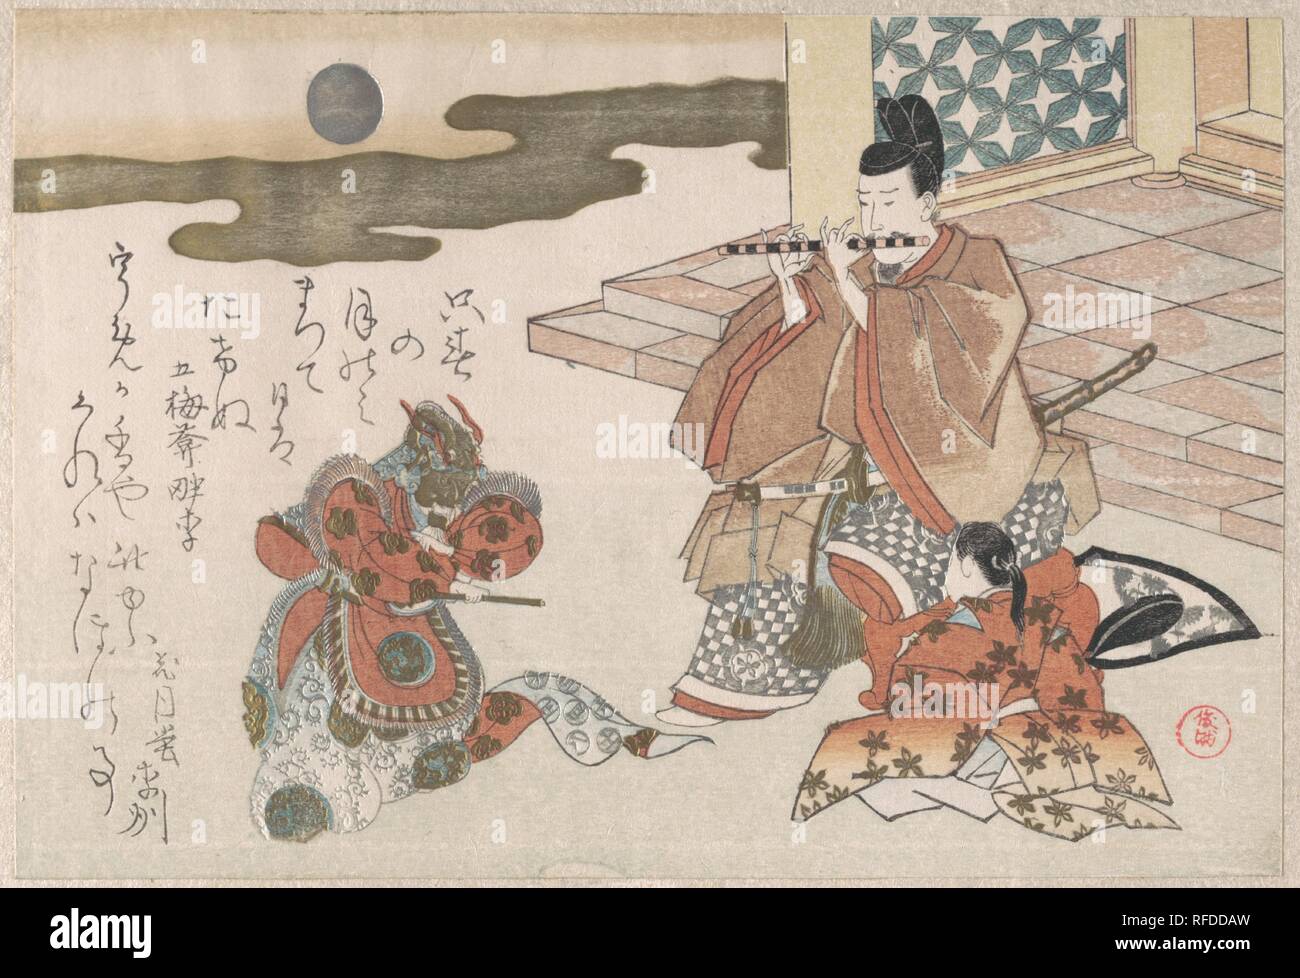 Cortigiano giocando un flauto per accompagnare una danza Bugaku. Artista: Kubo Shunman (giapponese, 1757-1820). Cultura: il Giappone. Dimensioni: 5 1/2 x 8 3/16 in. (14 x 20,8 cm). Data: probabilmente 1810. Il design di questo surimono, un sontuoso stampa, commissionato da uno dei club di poesia che fiorirono nella società urbana di inizio del XIX secolo di Edo, utilizza l'abbigliamento di un Bugaku prestazioni come immagini di buon auspicio per un nuovo anno di saluto. Esso evoca un aura di romanzo cortese nella letteratura classica. Museo: Metropolitan Museum of Art di New York, Stati Uniti d'America. Foto Stock